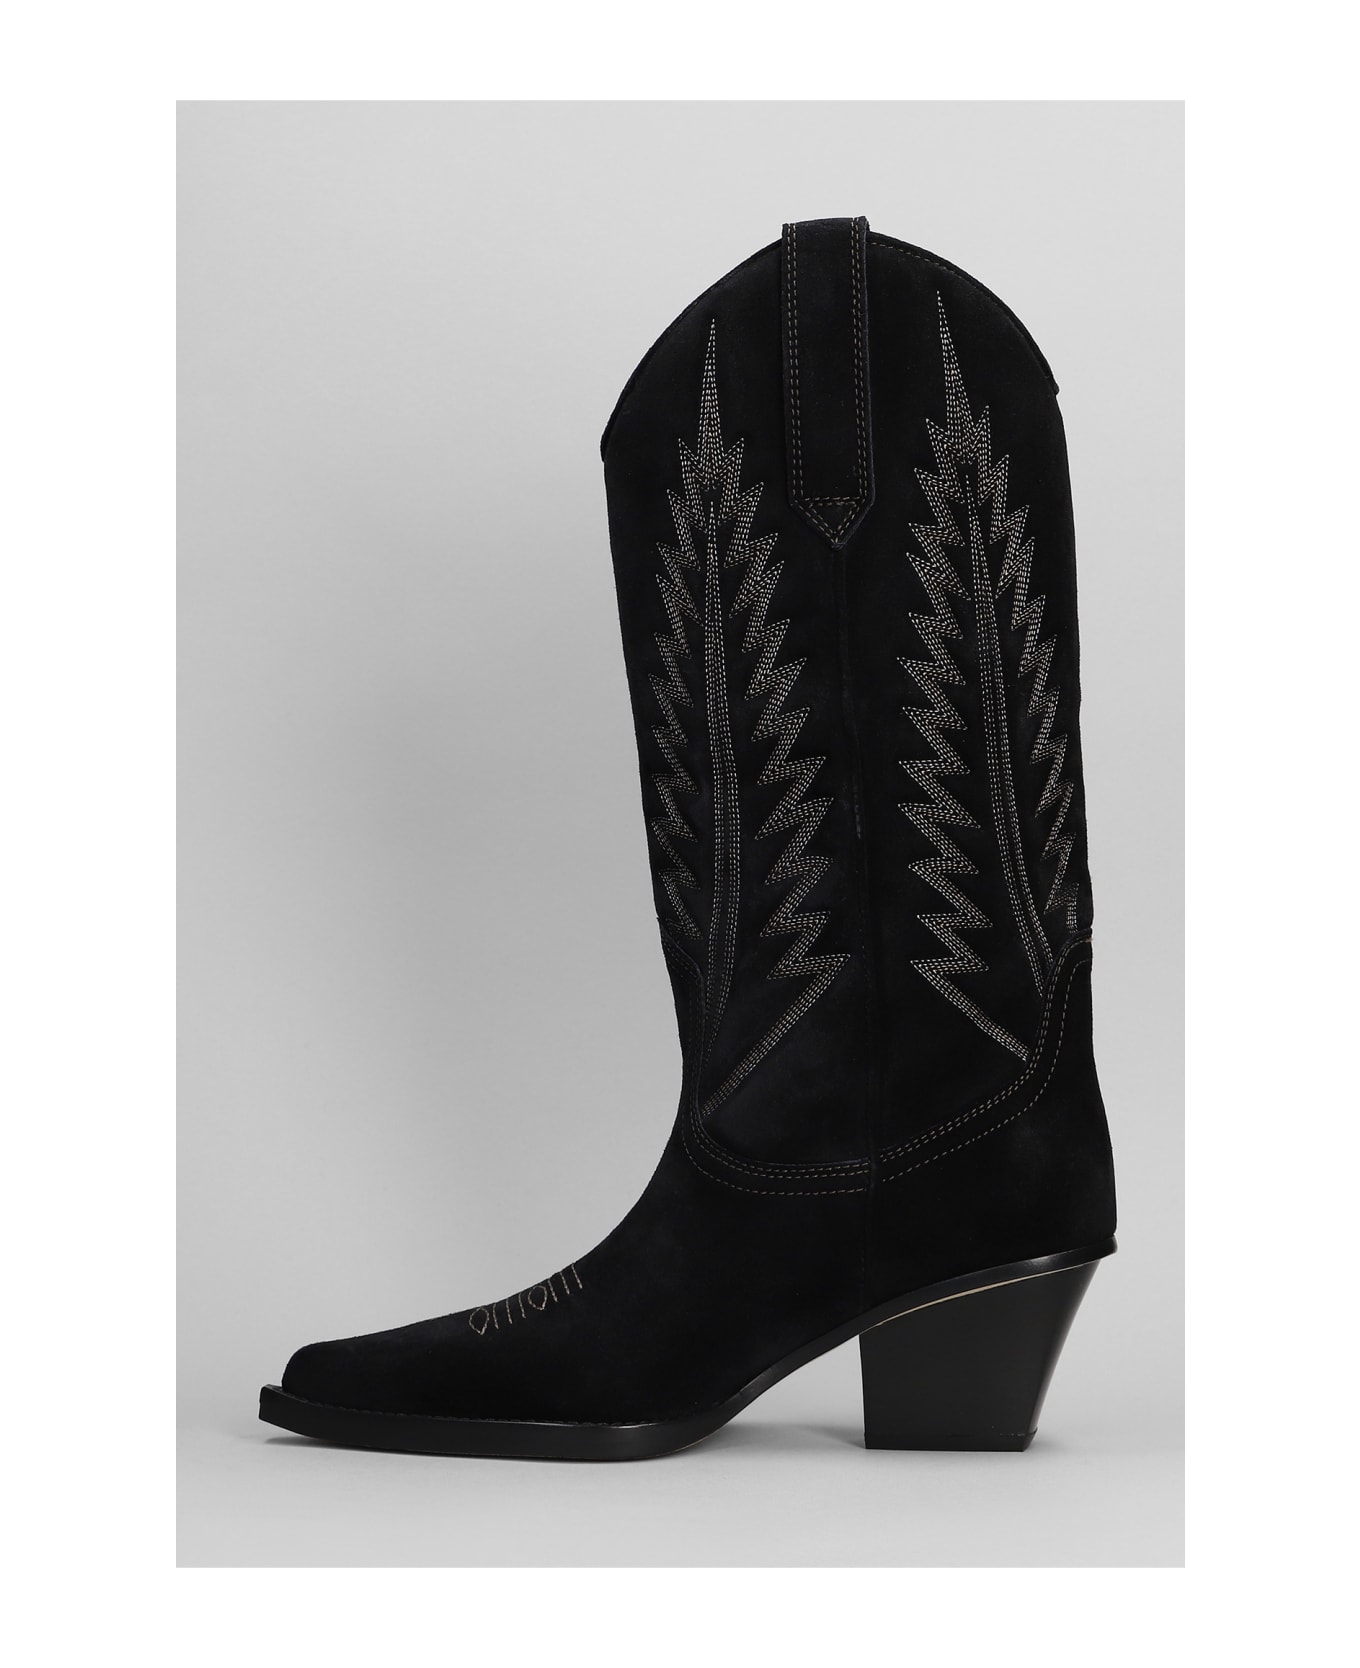 Paris Texas Rosario Texan Boots In Black Suede - Black